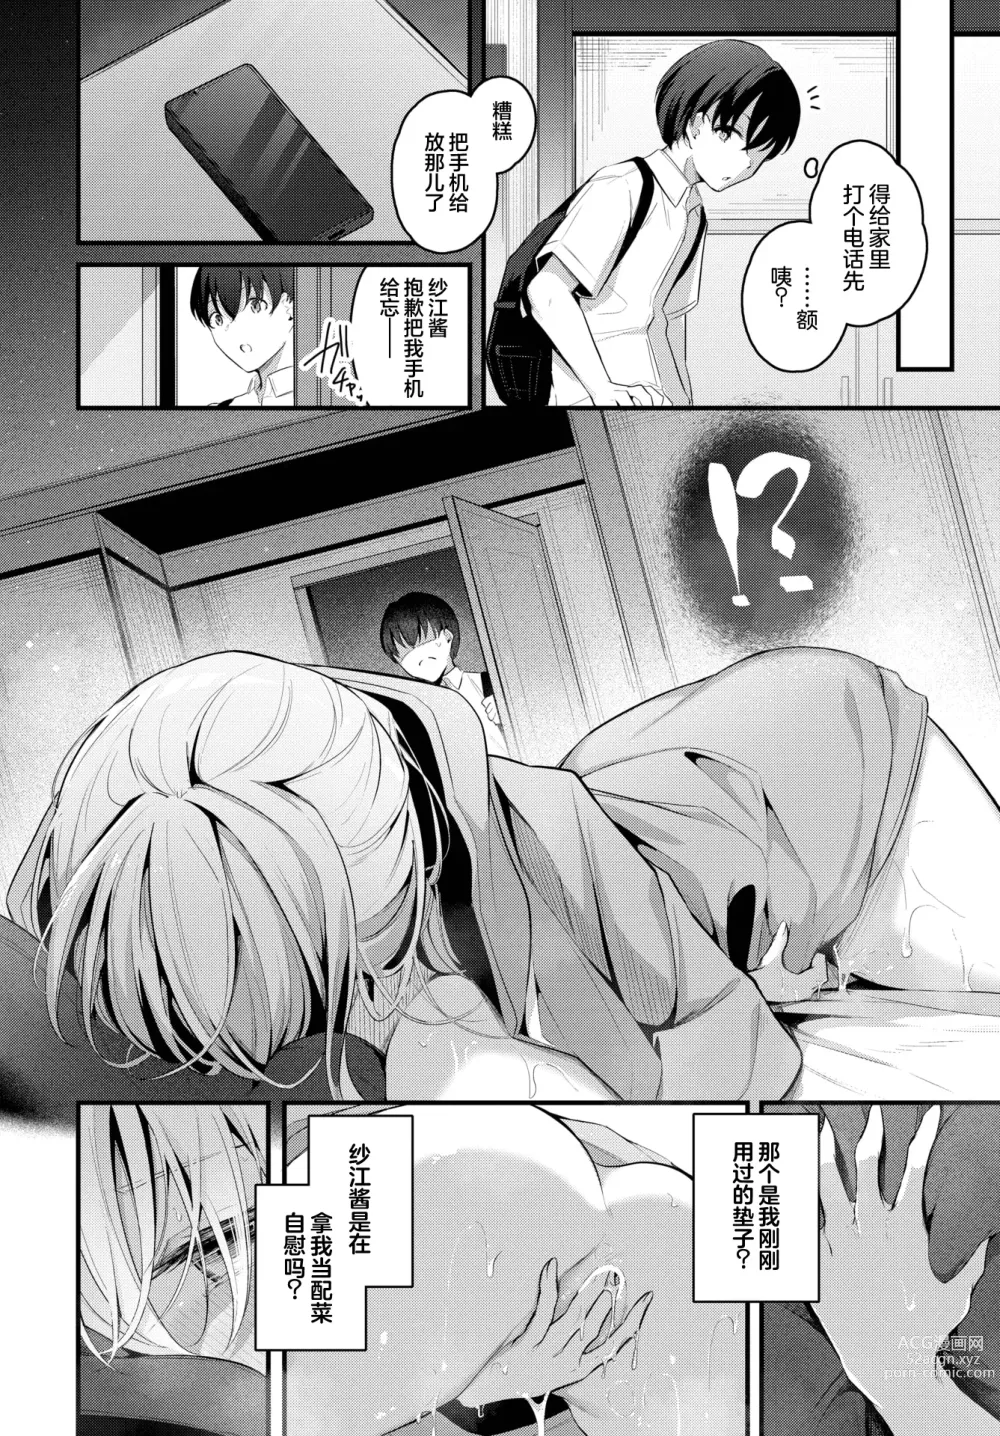 Page 5 of manga Hikikomori Kanojo